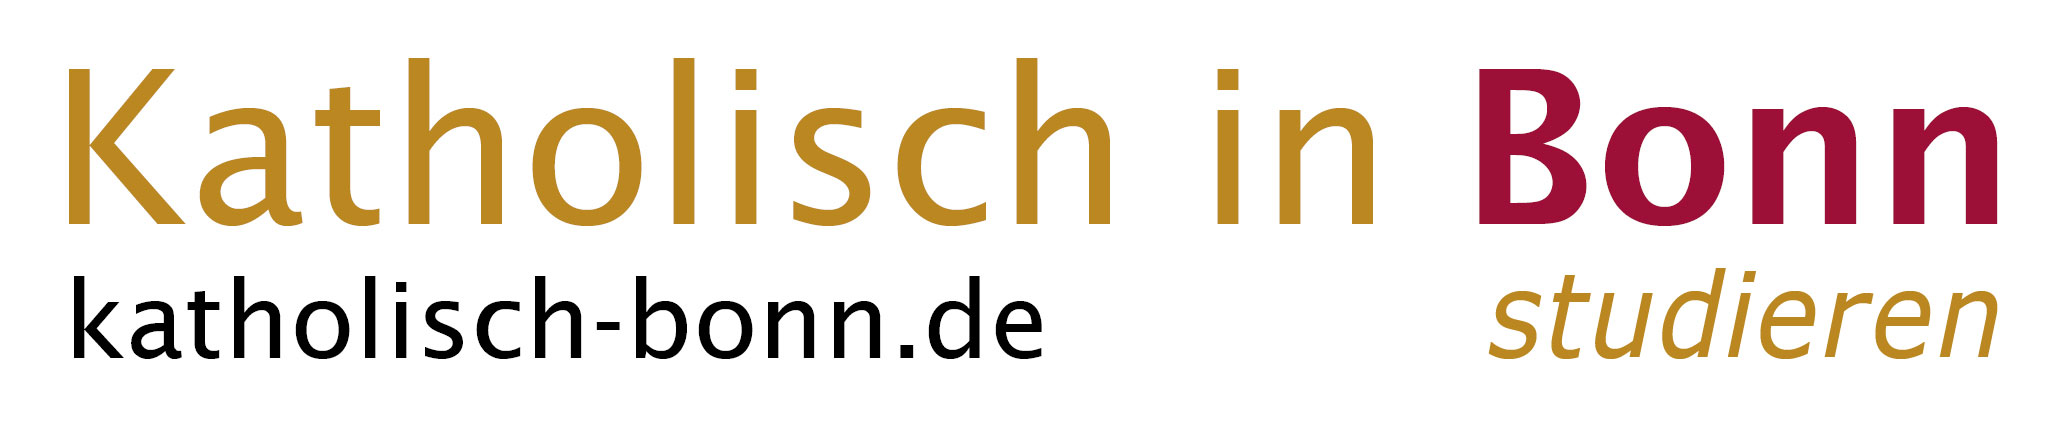 katholisch in Bonn STUDIEREN Logo